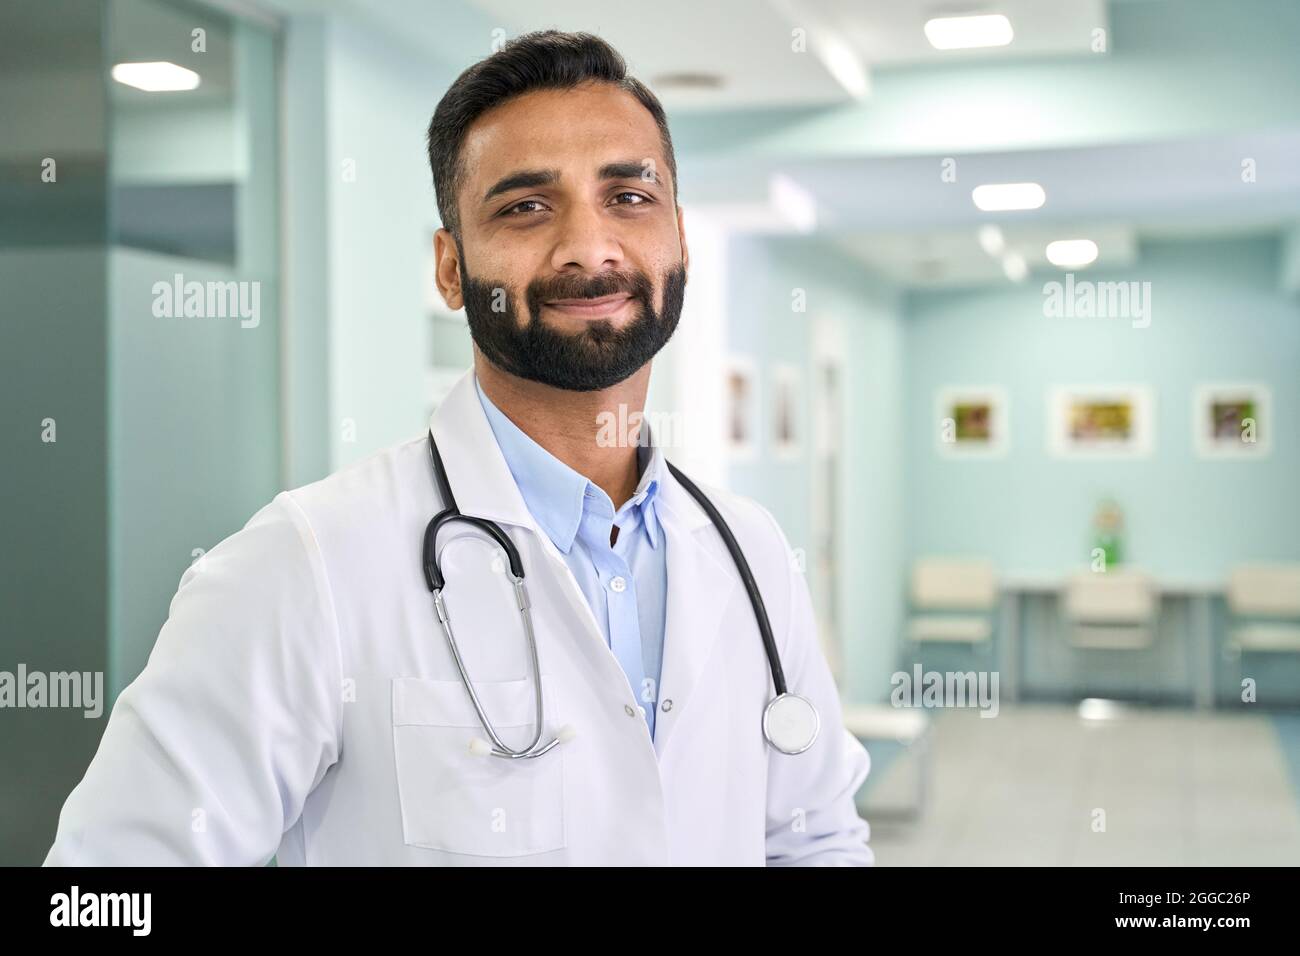 Retrato de un médico indio de pie en un hospital clínico mirando la cámara. Foto de stock